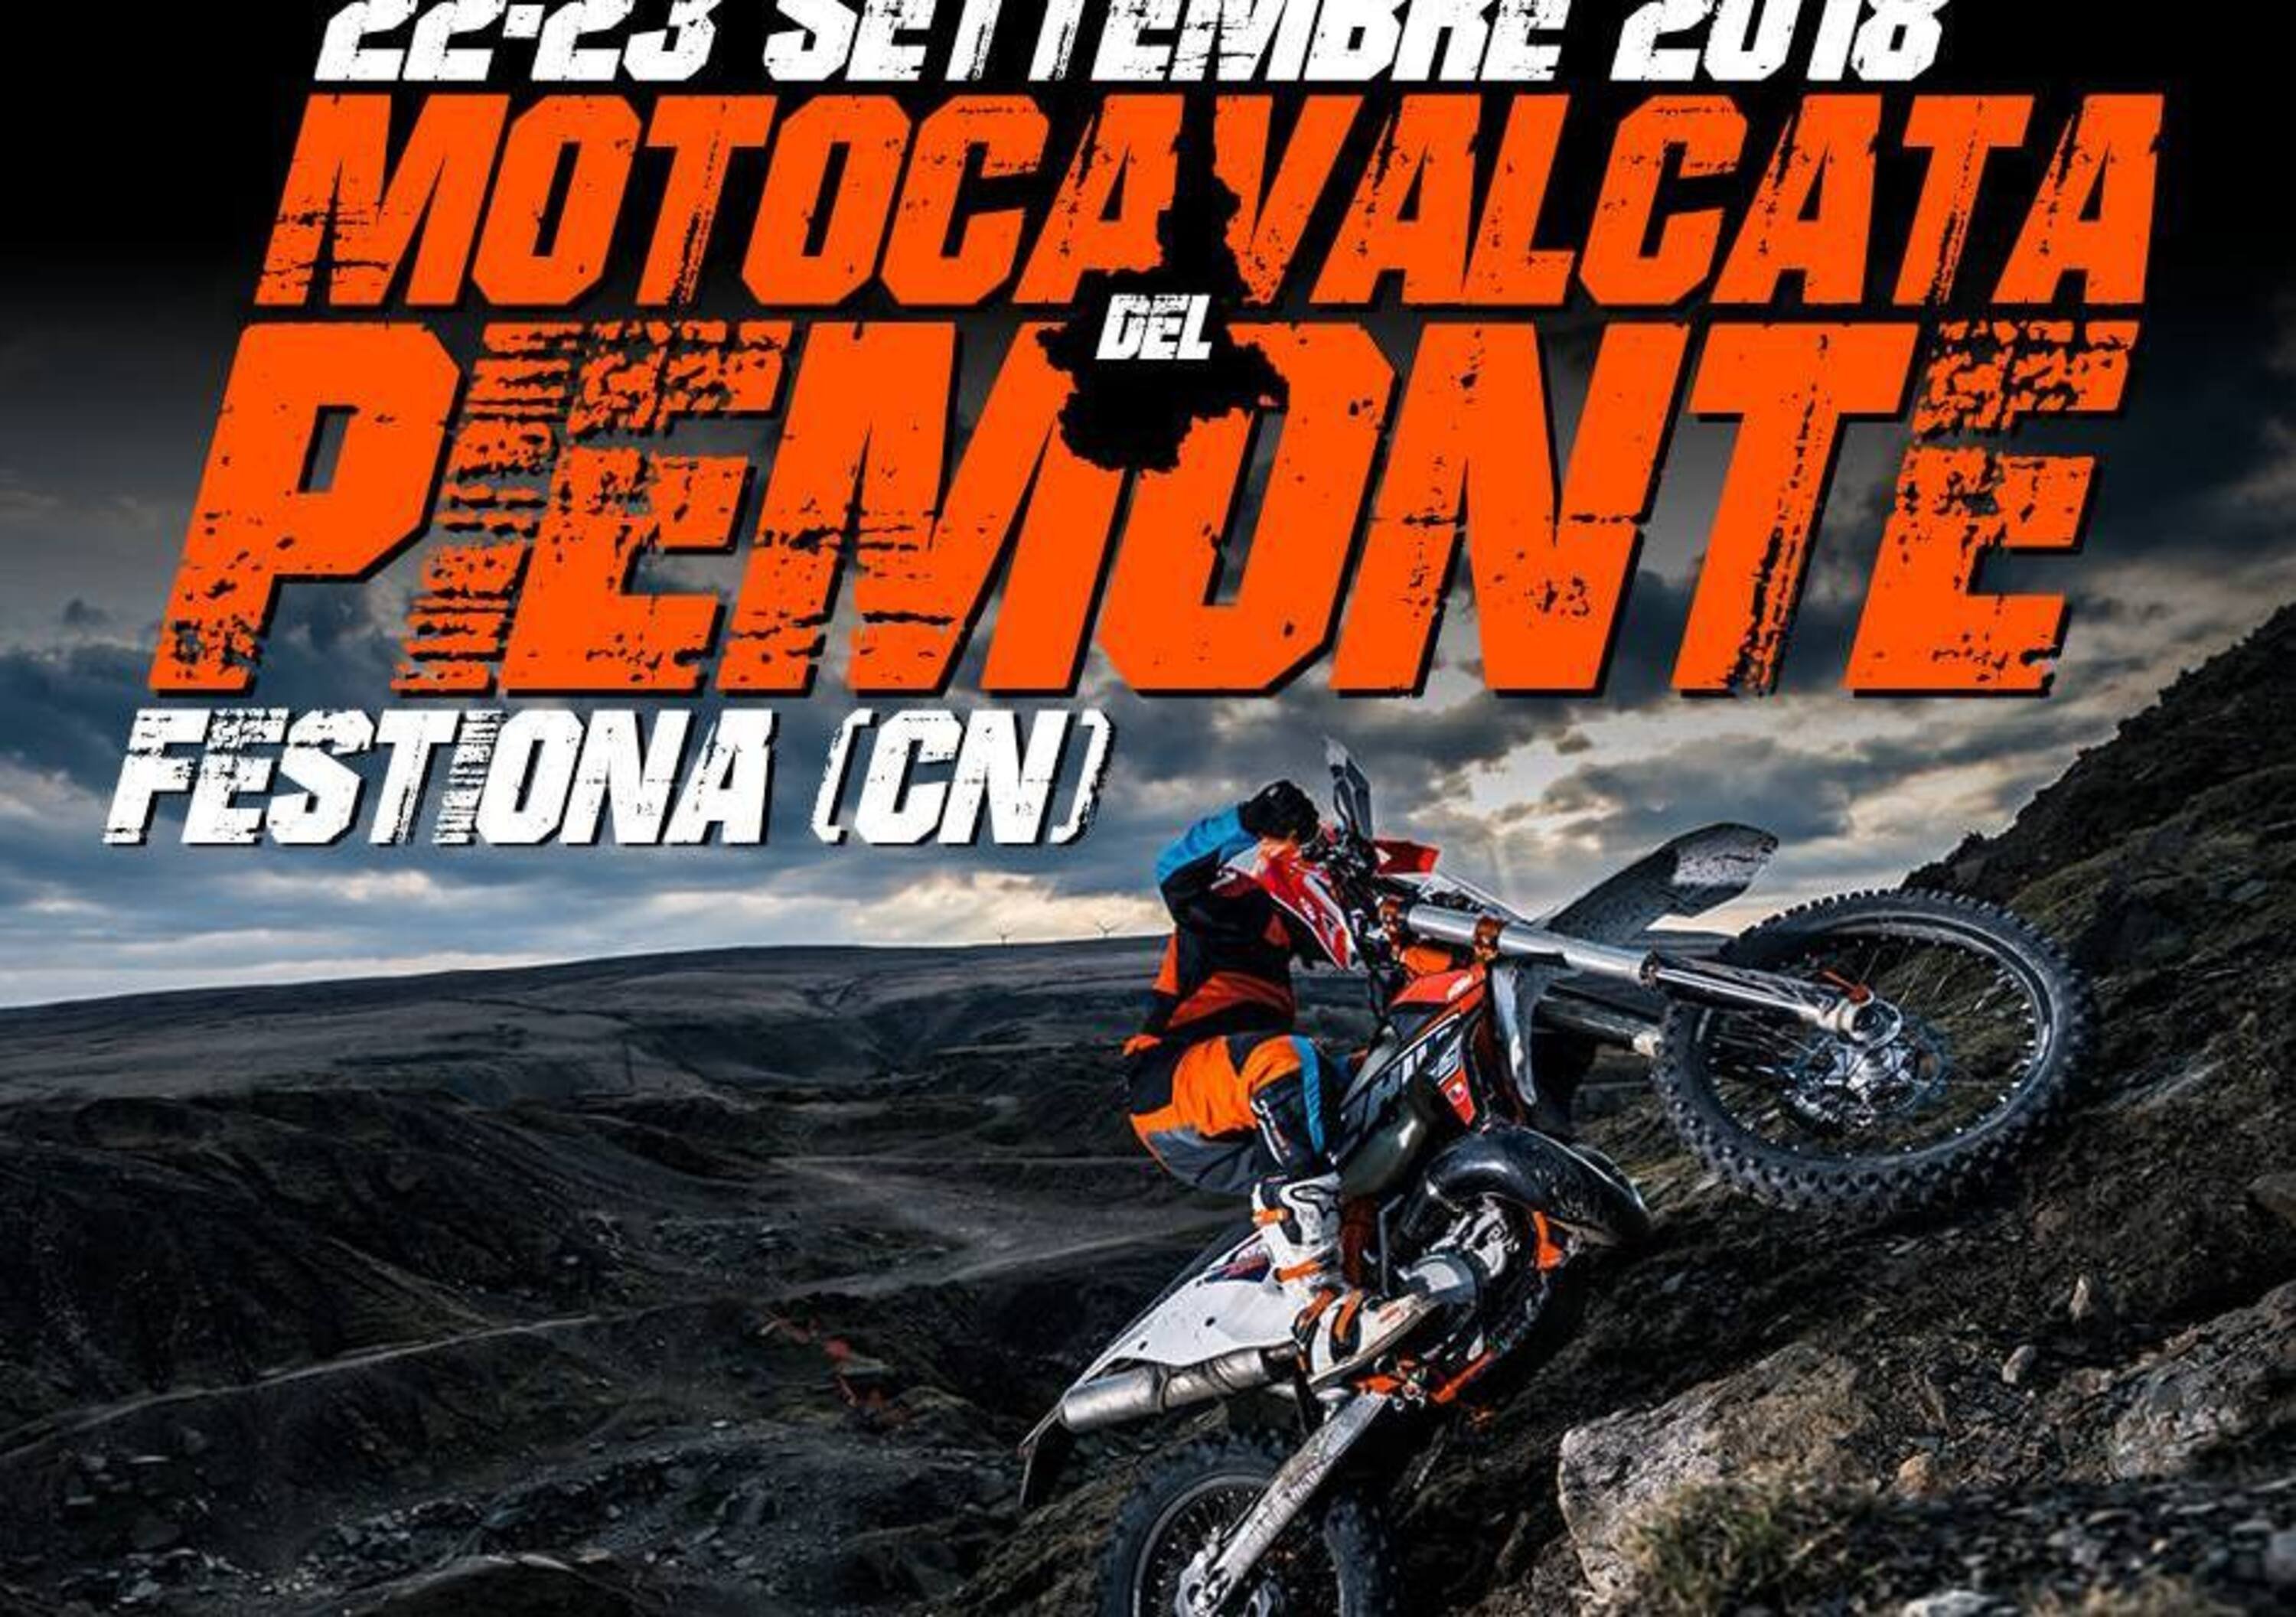 Motocavalcata del Piemonte: fuoristrada e test dei nuovi modelli KTM